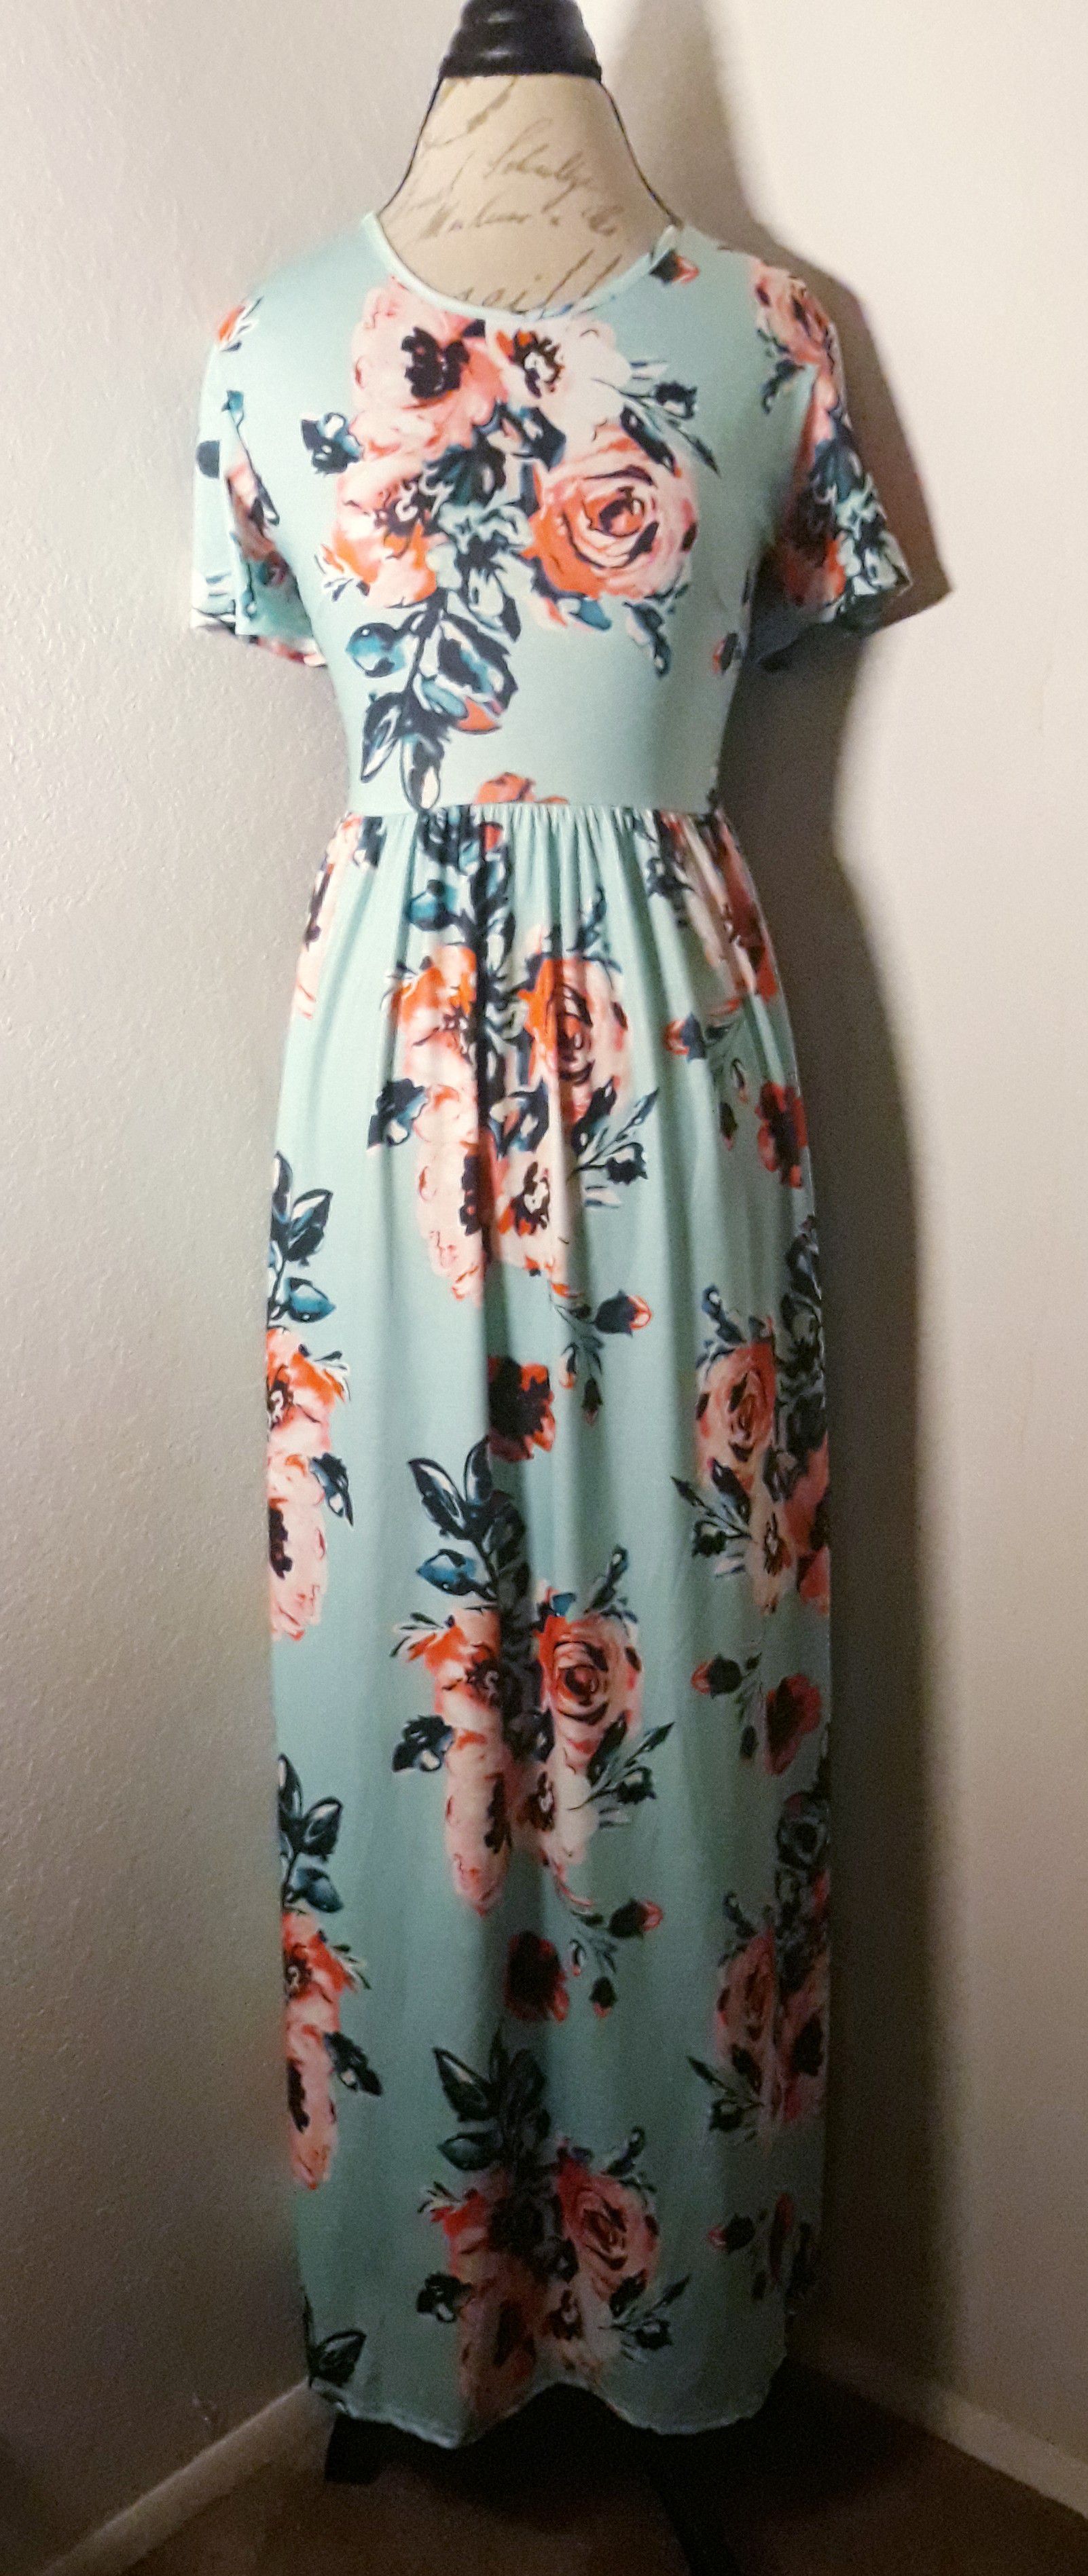 Teal & Floral Short Sleeve Maxi Dress Sz XL